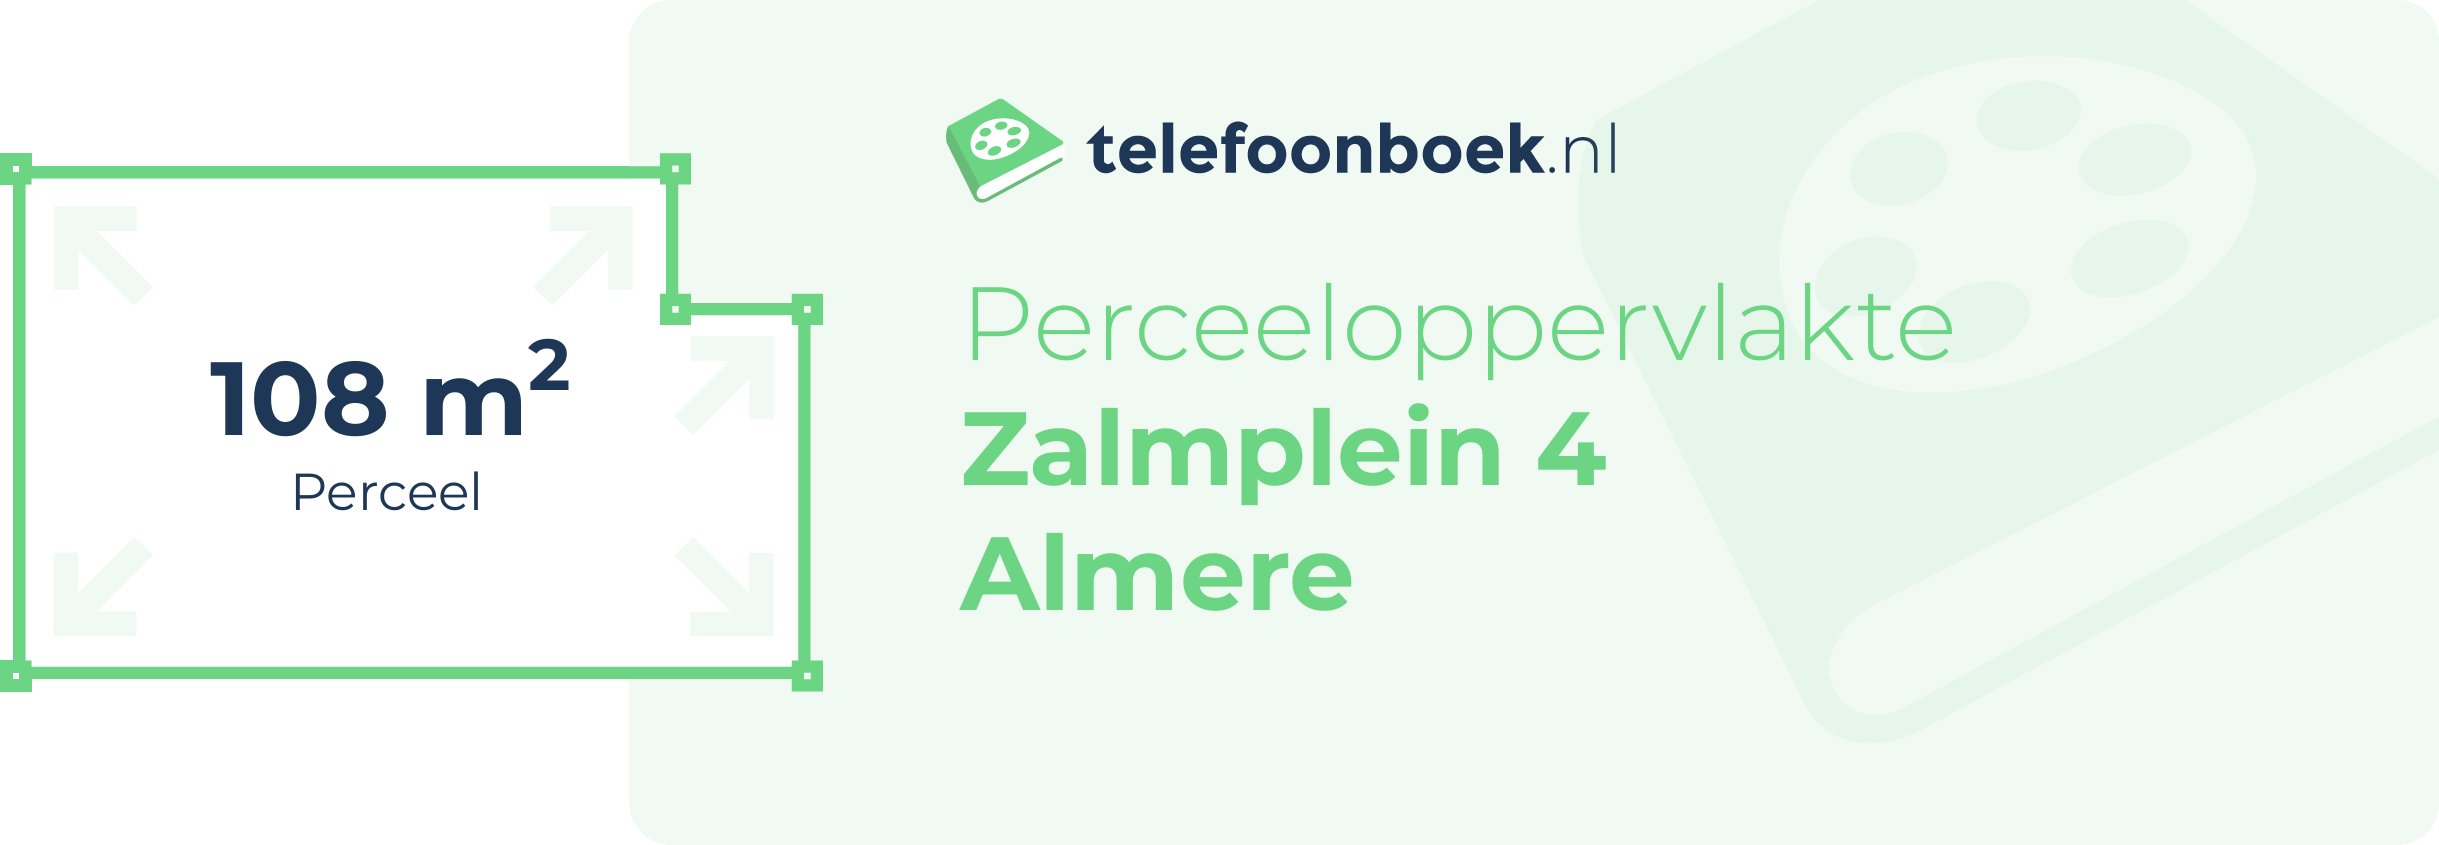 Perceeloppervlakte Zalmplein 4 Almere